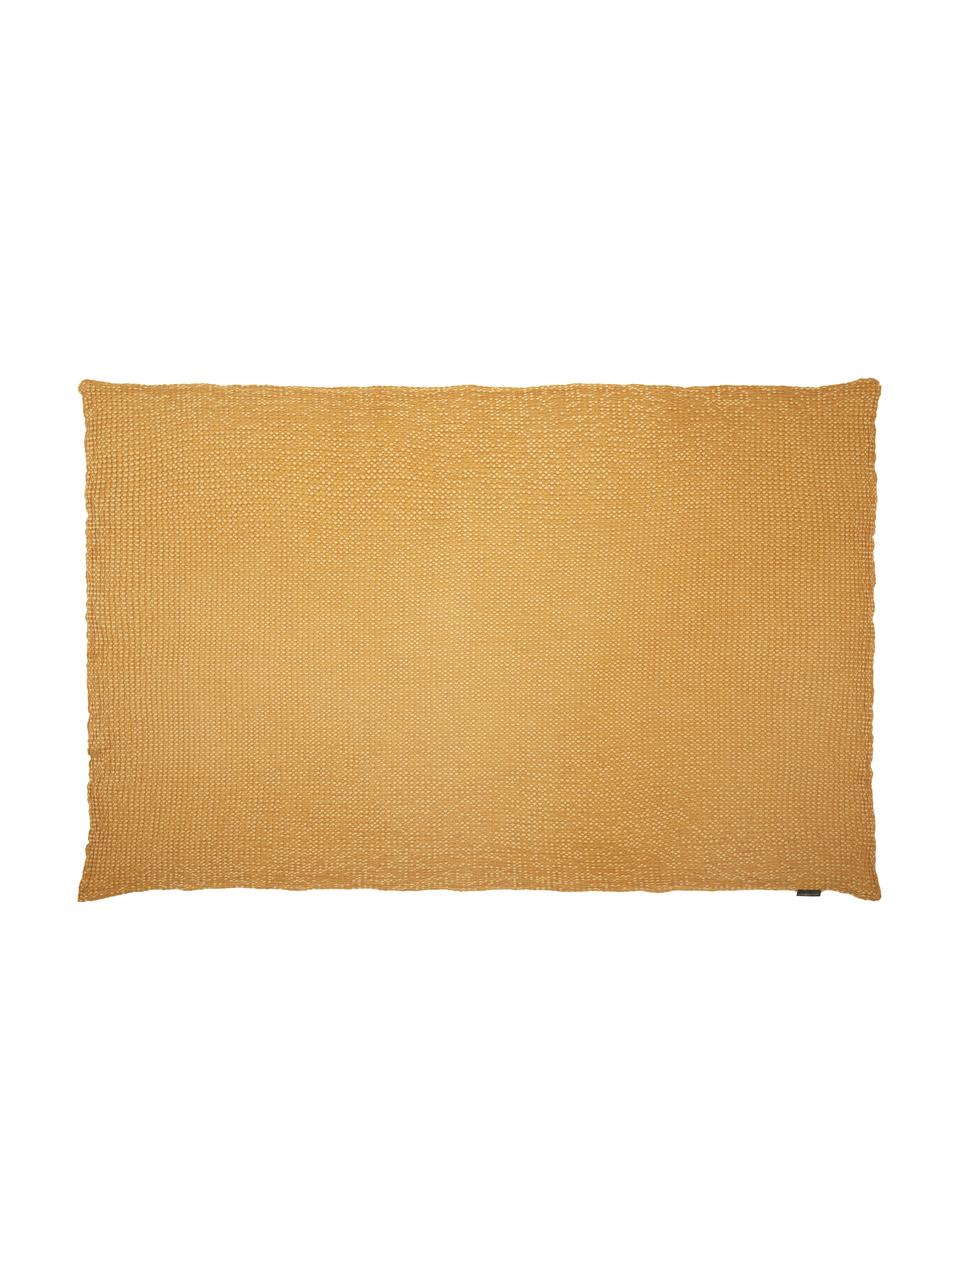 Manta de algodón Vigo, 100% algodón, Amarillo dorado, An 140 x L 200 cm